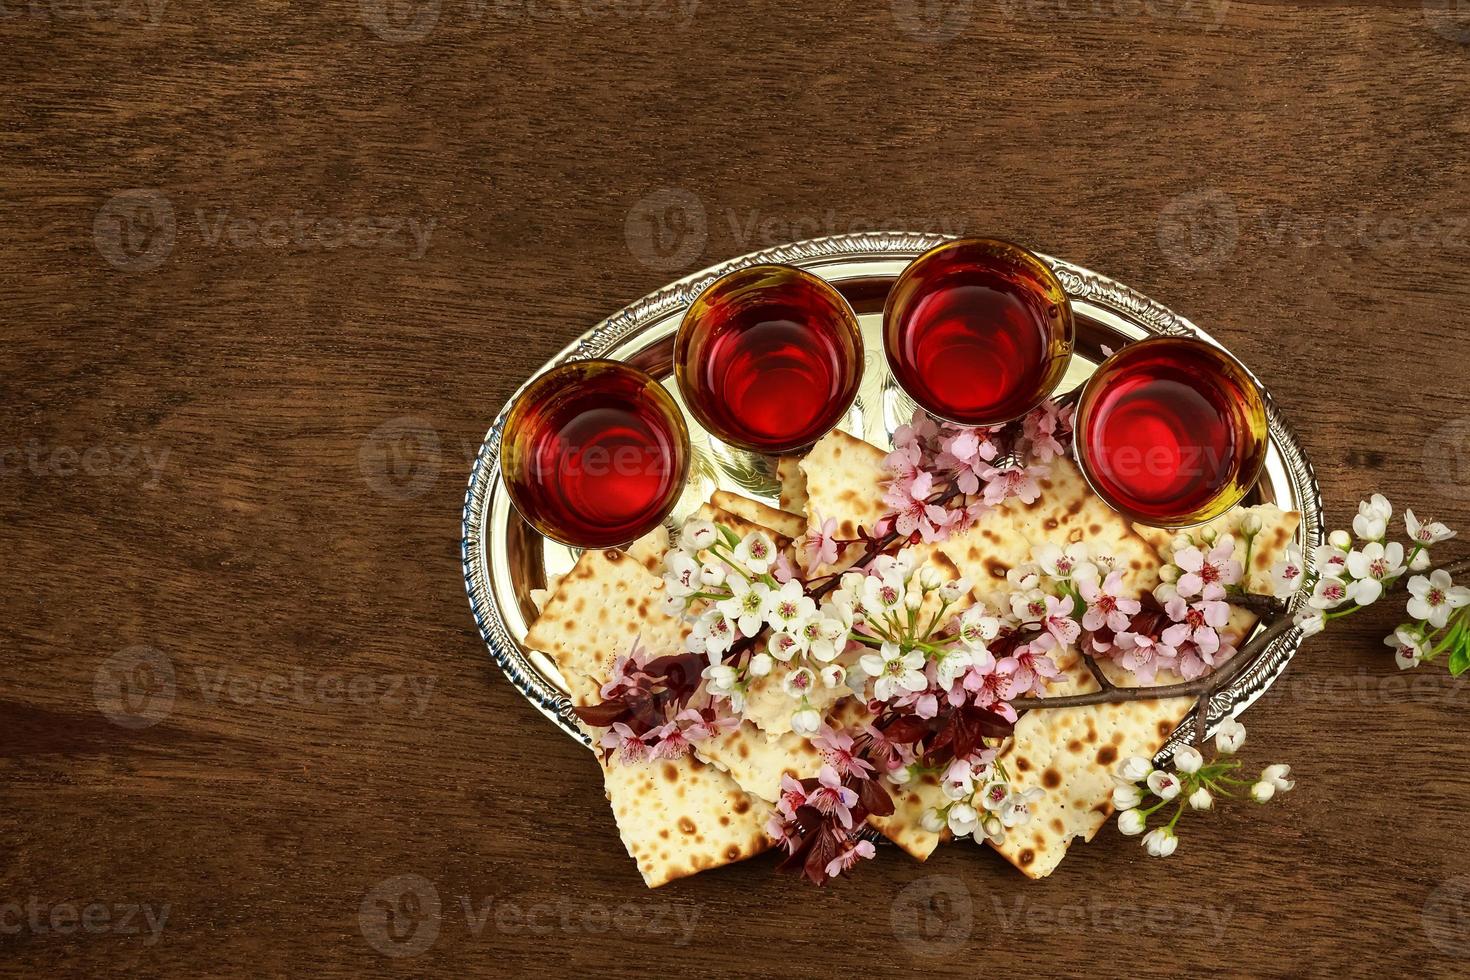 pesachstilleven met wijn en matzoh joods paschabrood foto